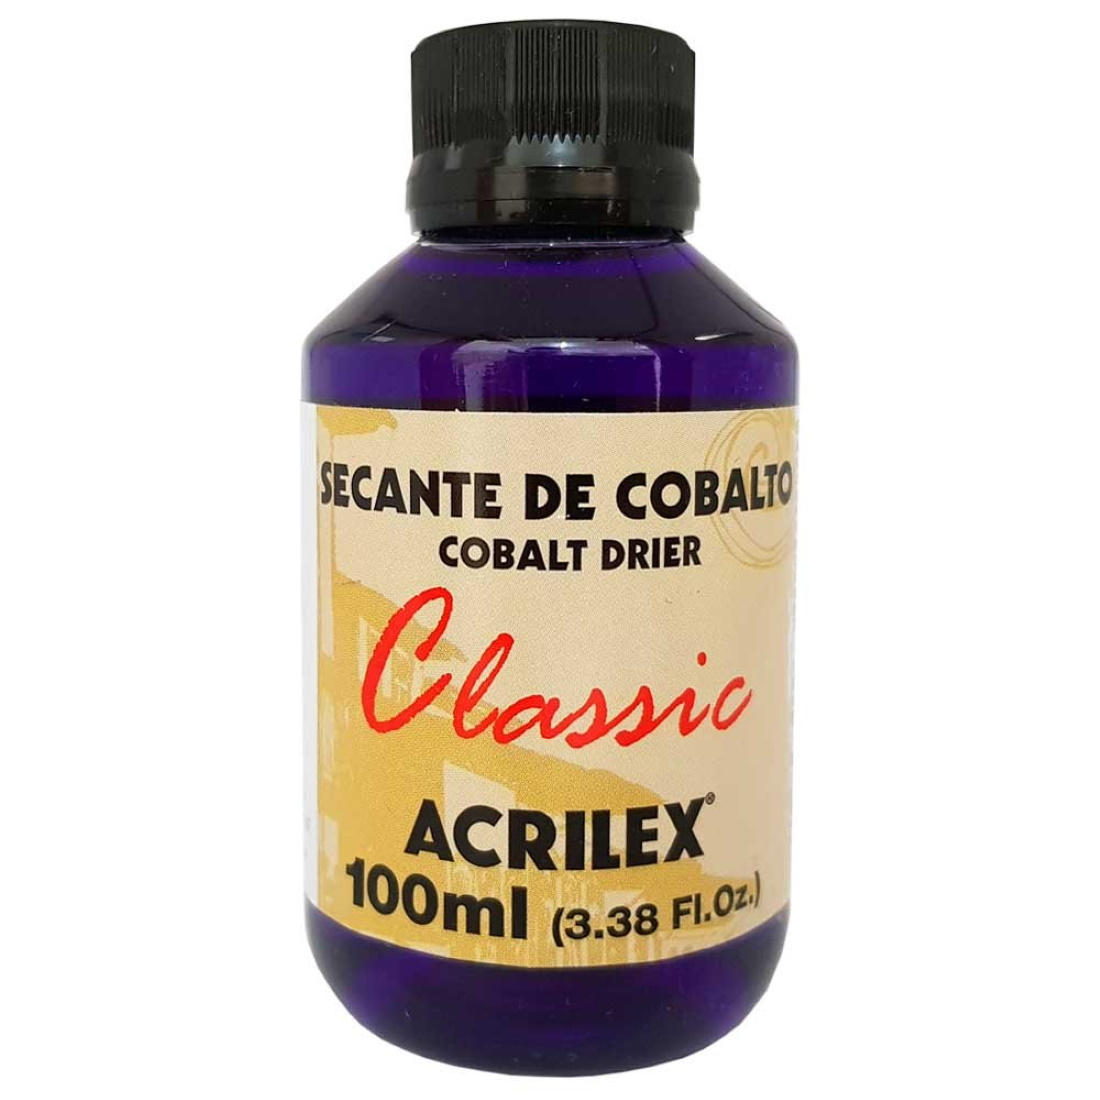 Secante Cobalto Classic acrilex